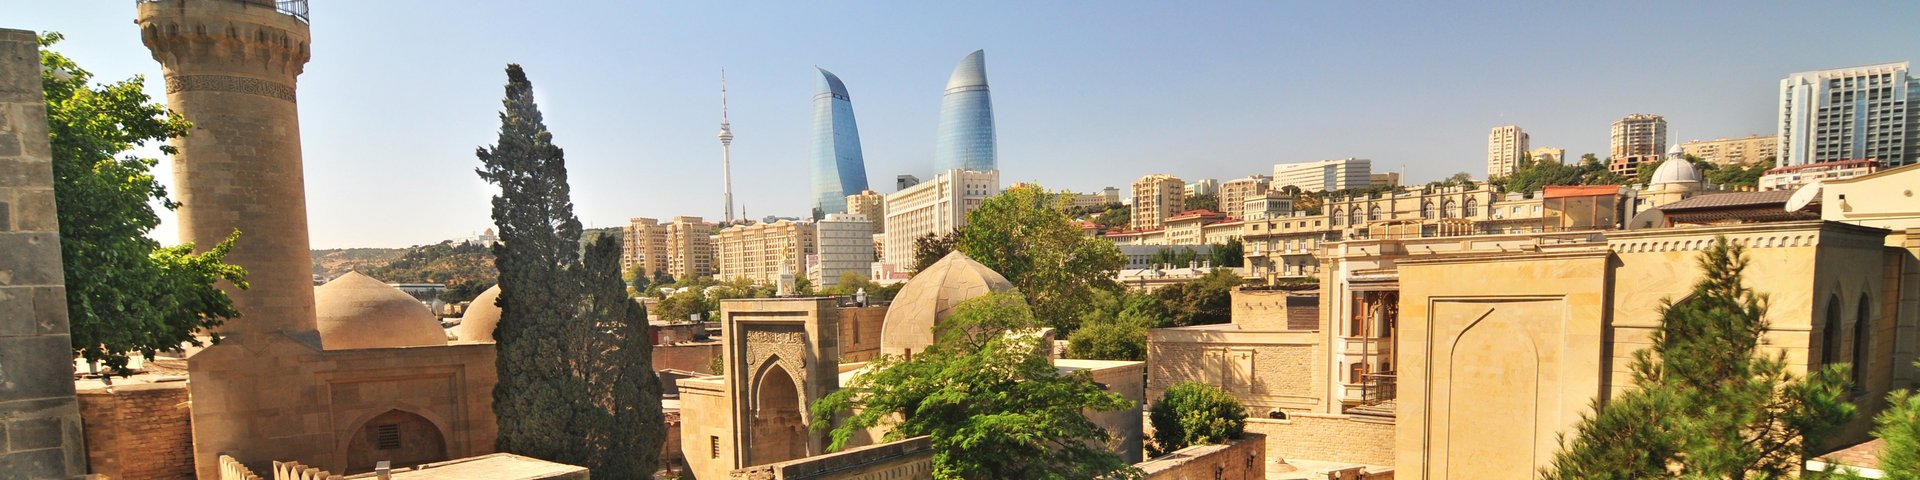 Blick über Baku, die Hauptstadt von Aserbaidschan